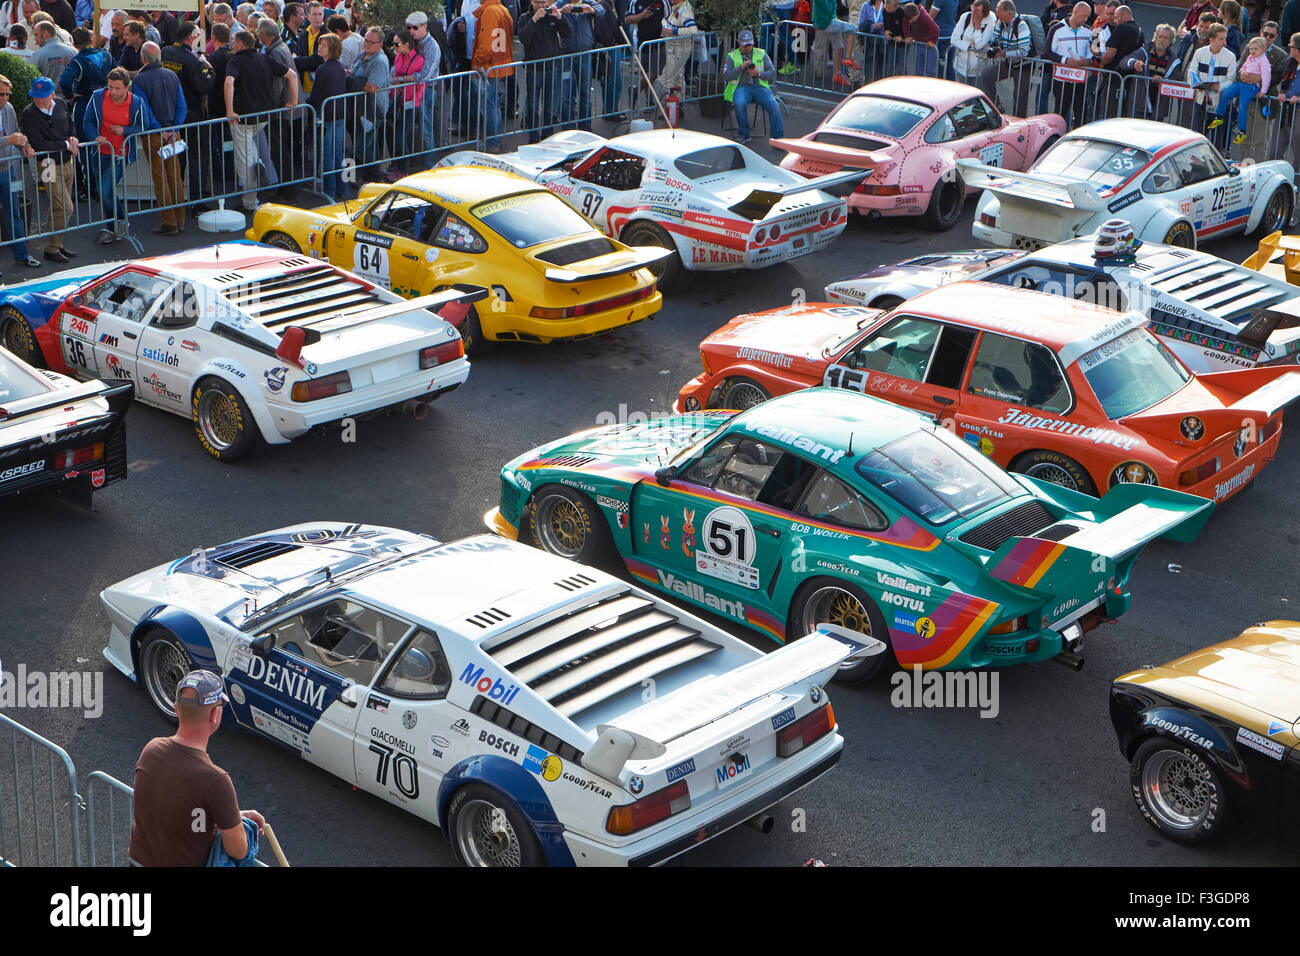 Championnat de course automobile allemande,1972-1981, le parc ferme, l'AvD Nürburgring 2015 Oldtimer-Grand-Prix ; Allemagne Banque D'Images